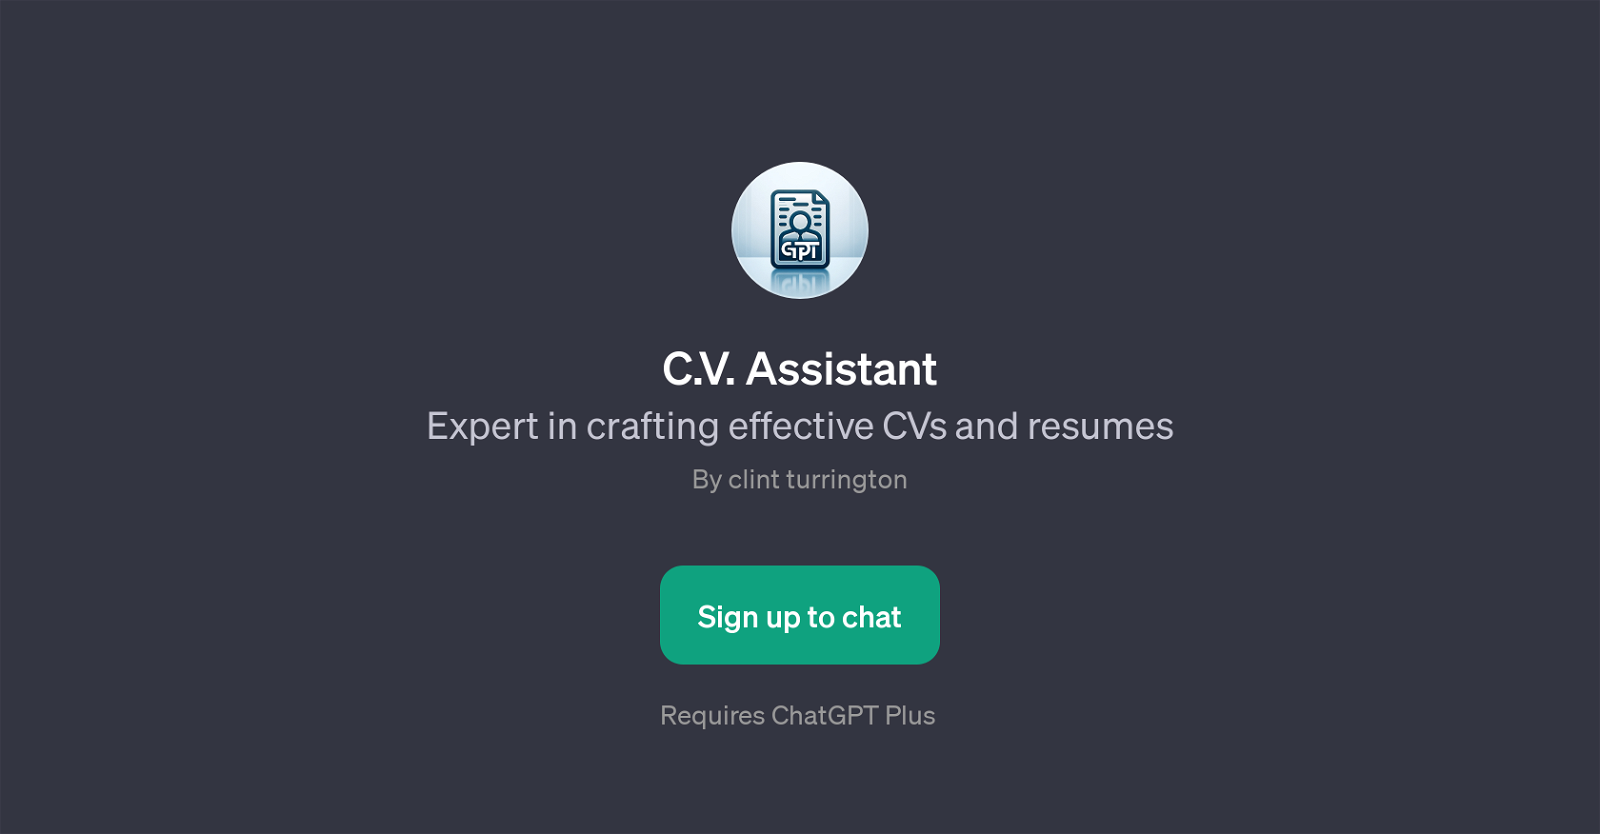 C.V. Assistant website